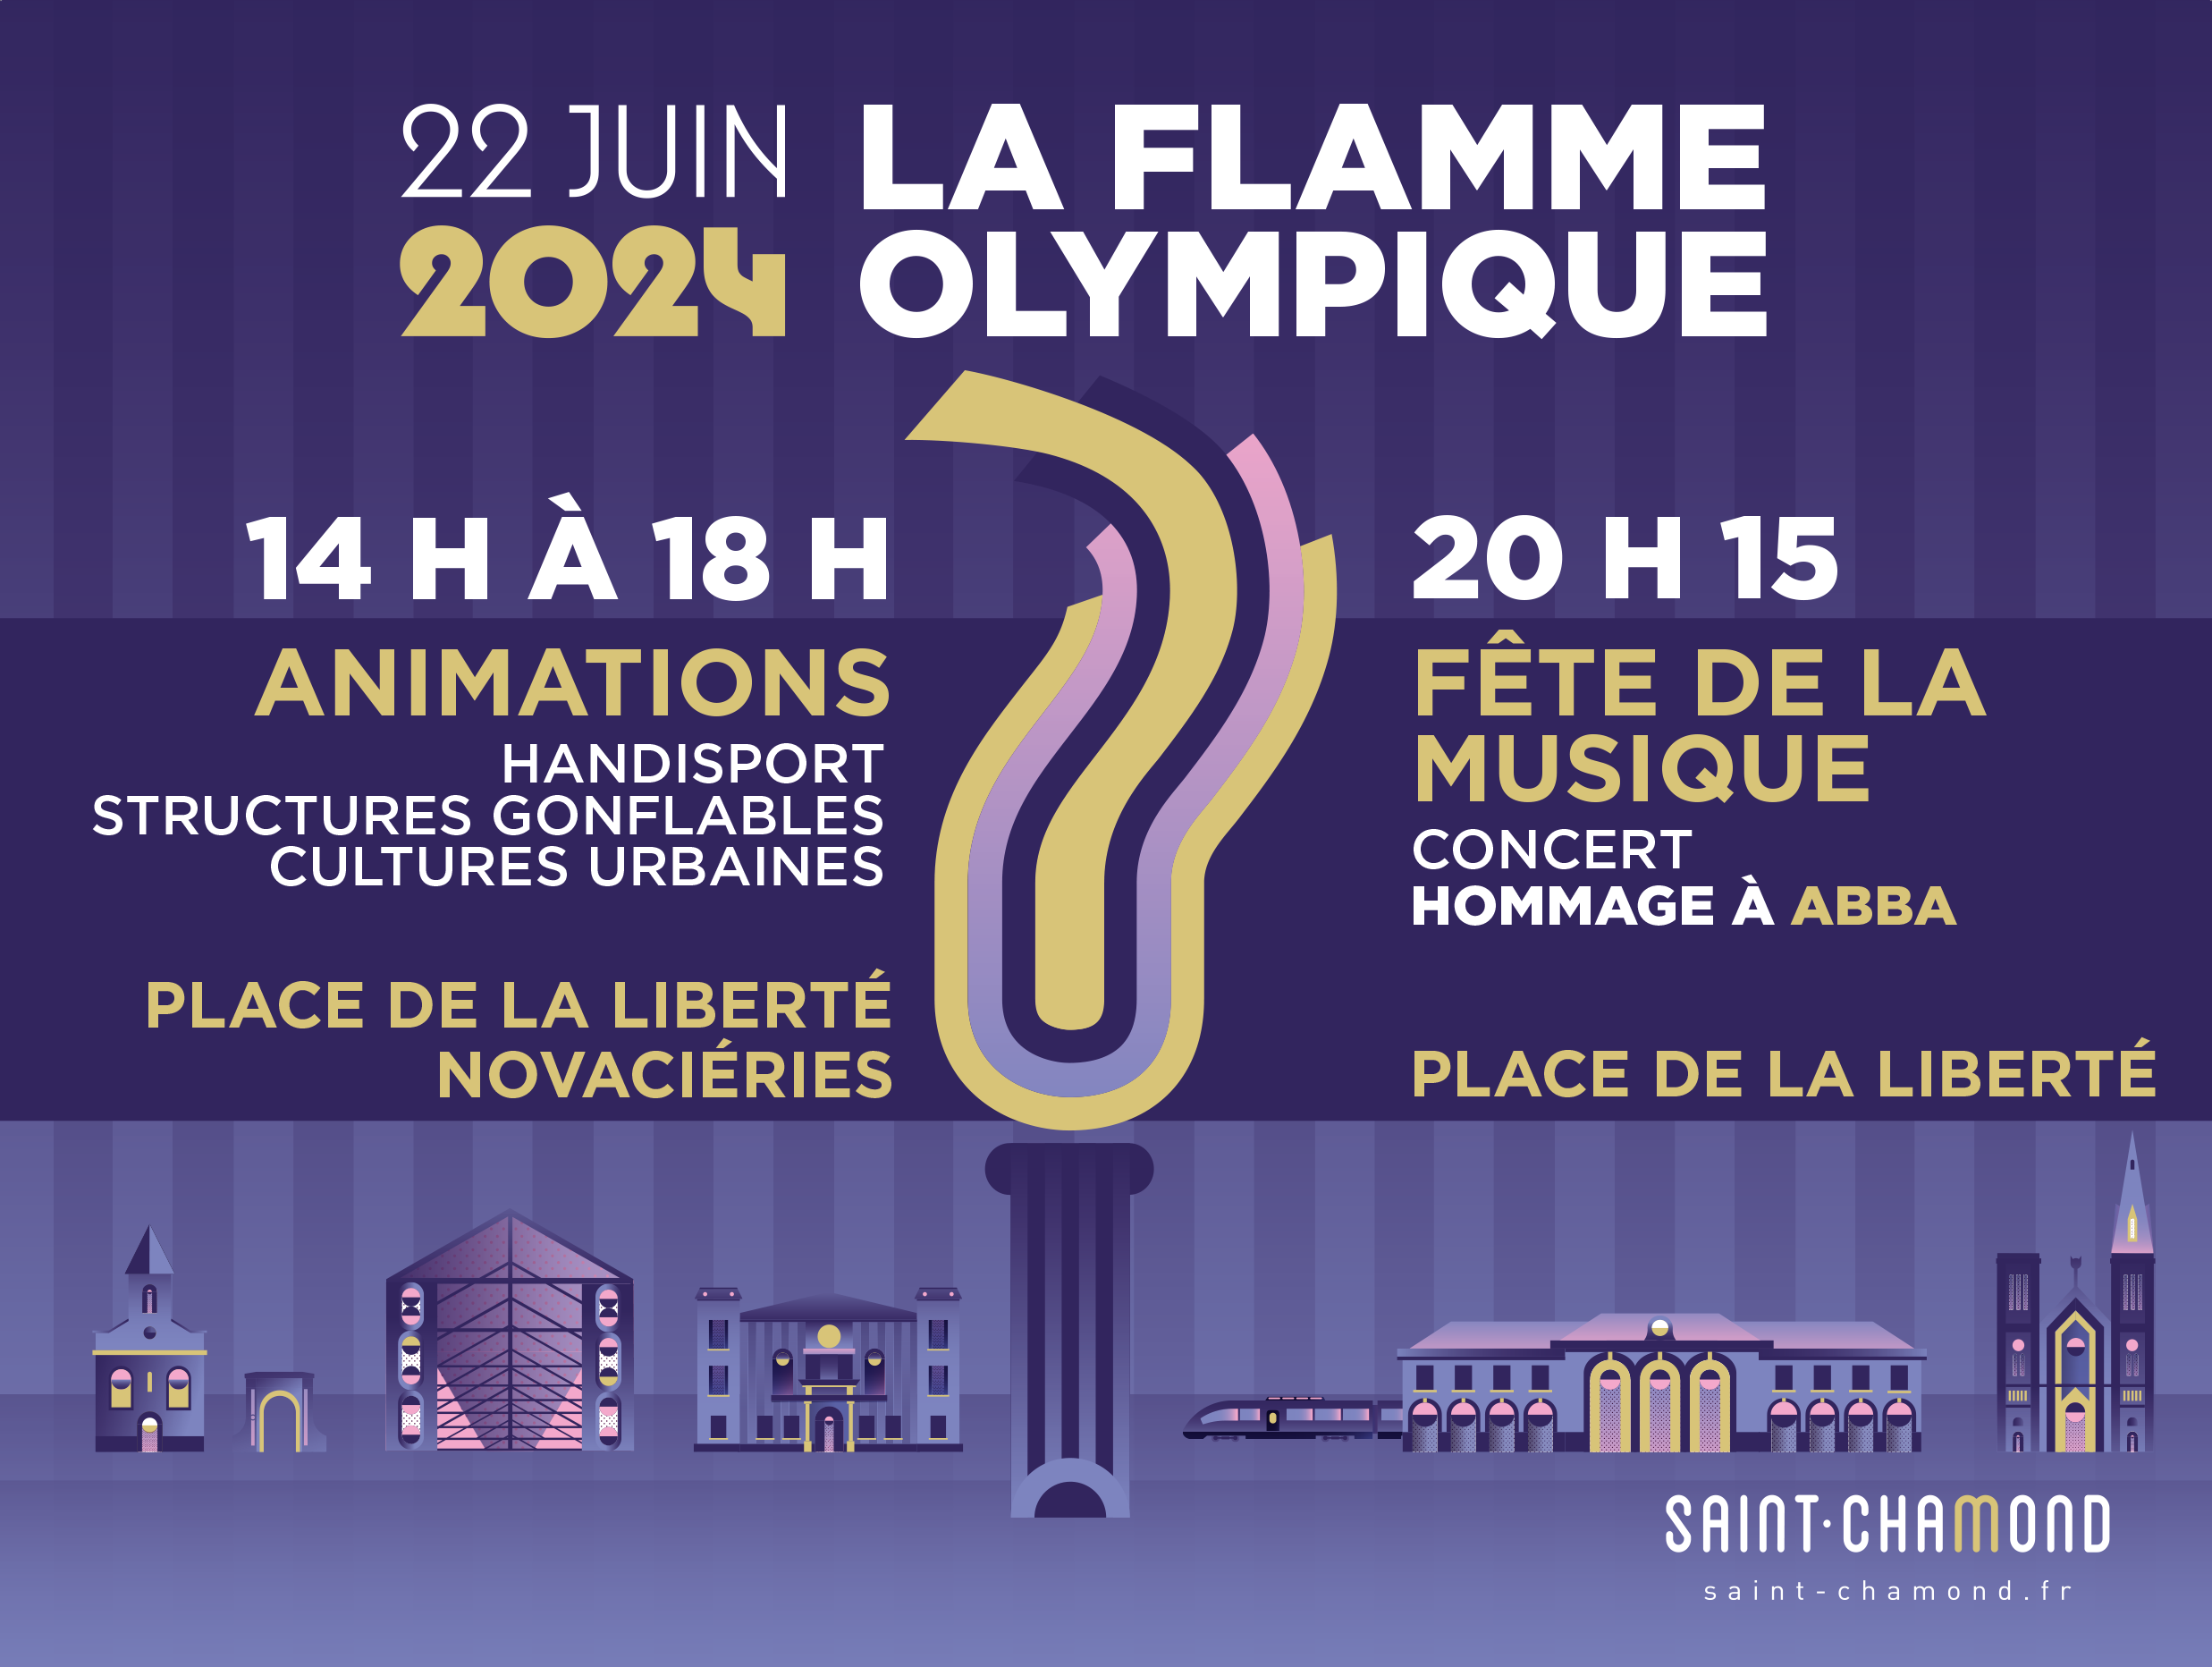 Affiche annonçant le passage de la flamme olympique et son programme